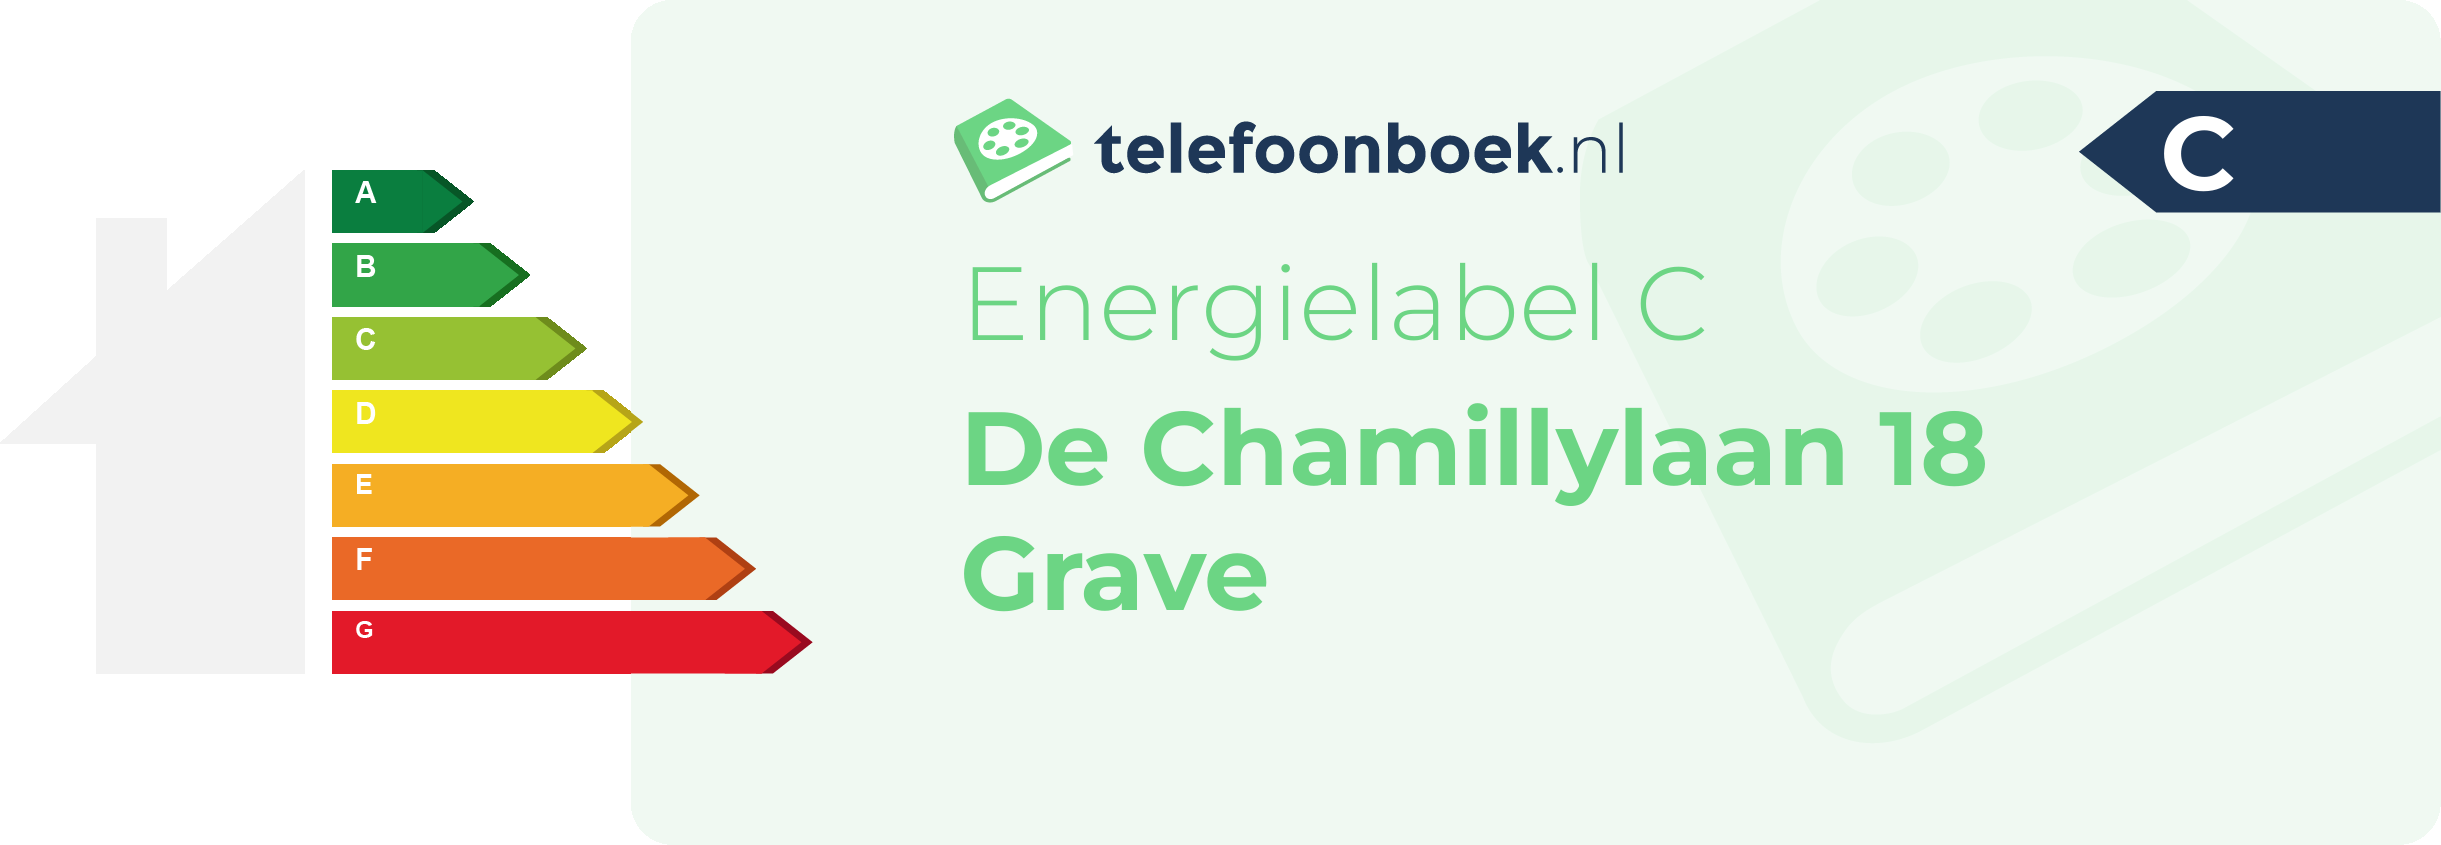 Energielabel De Chamillylaan 18 Grave